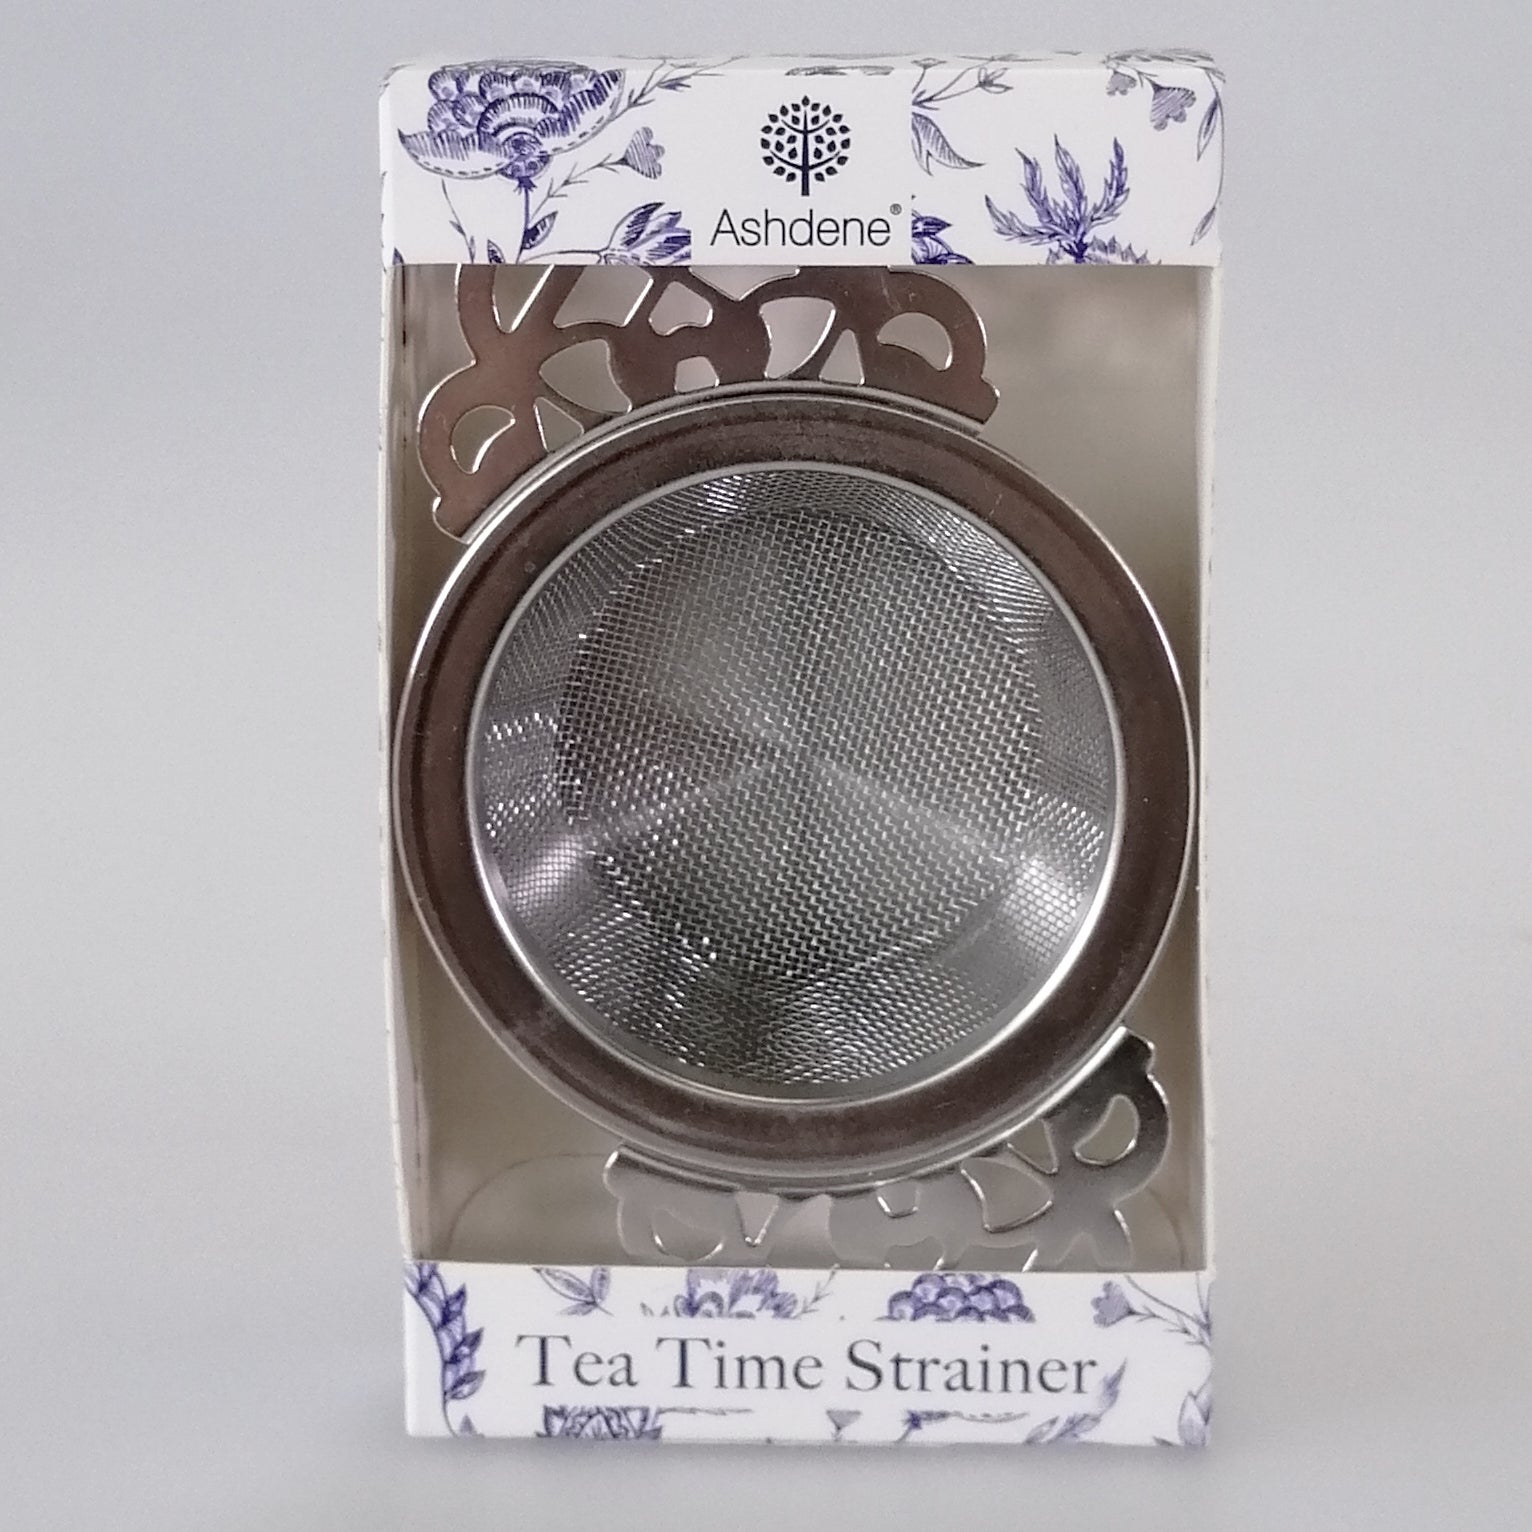 Ashdene - Assorted Tea Time Strainer